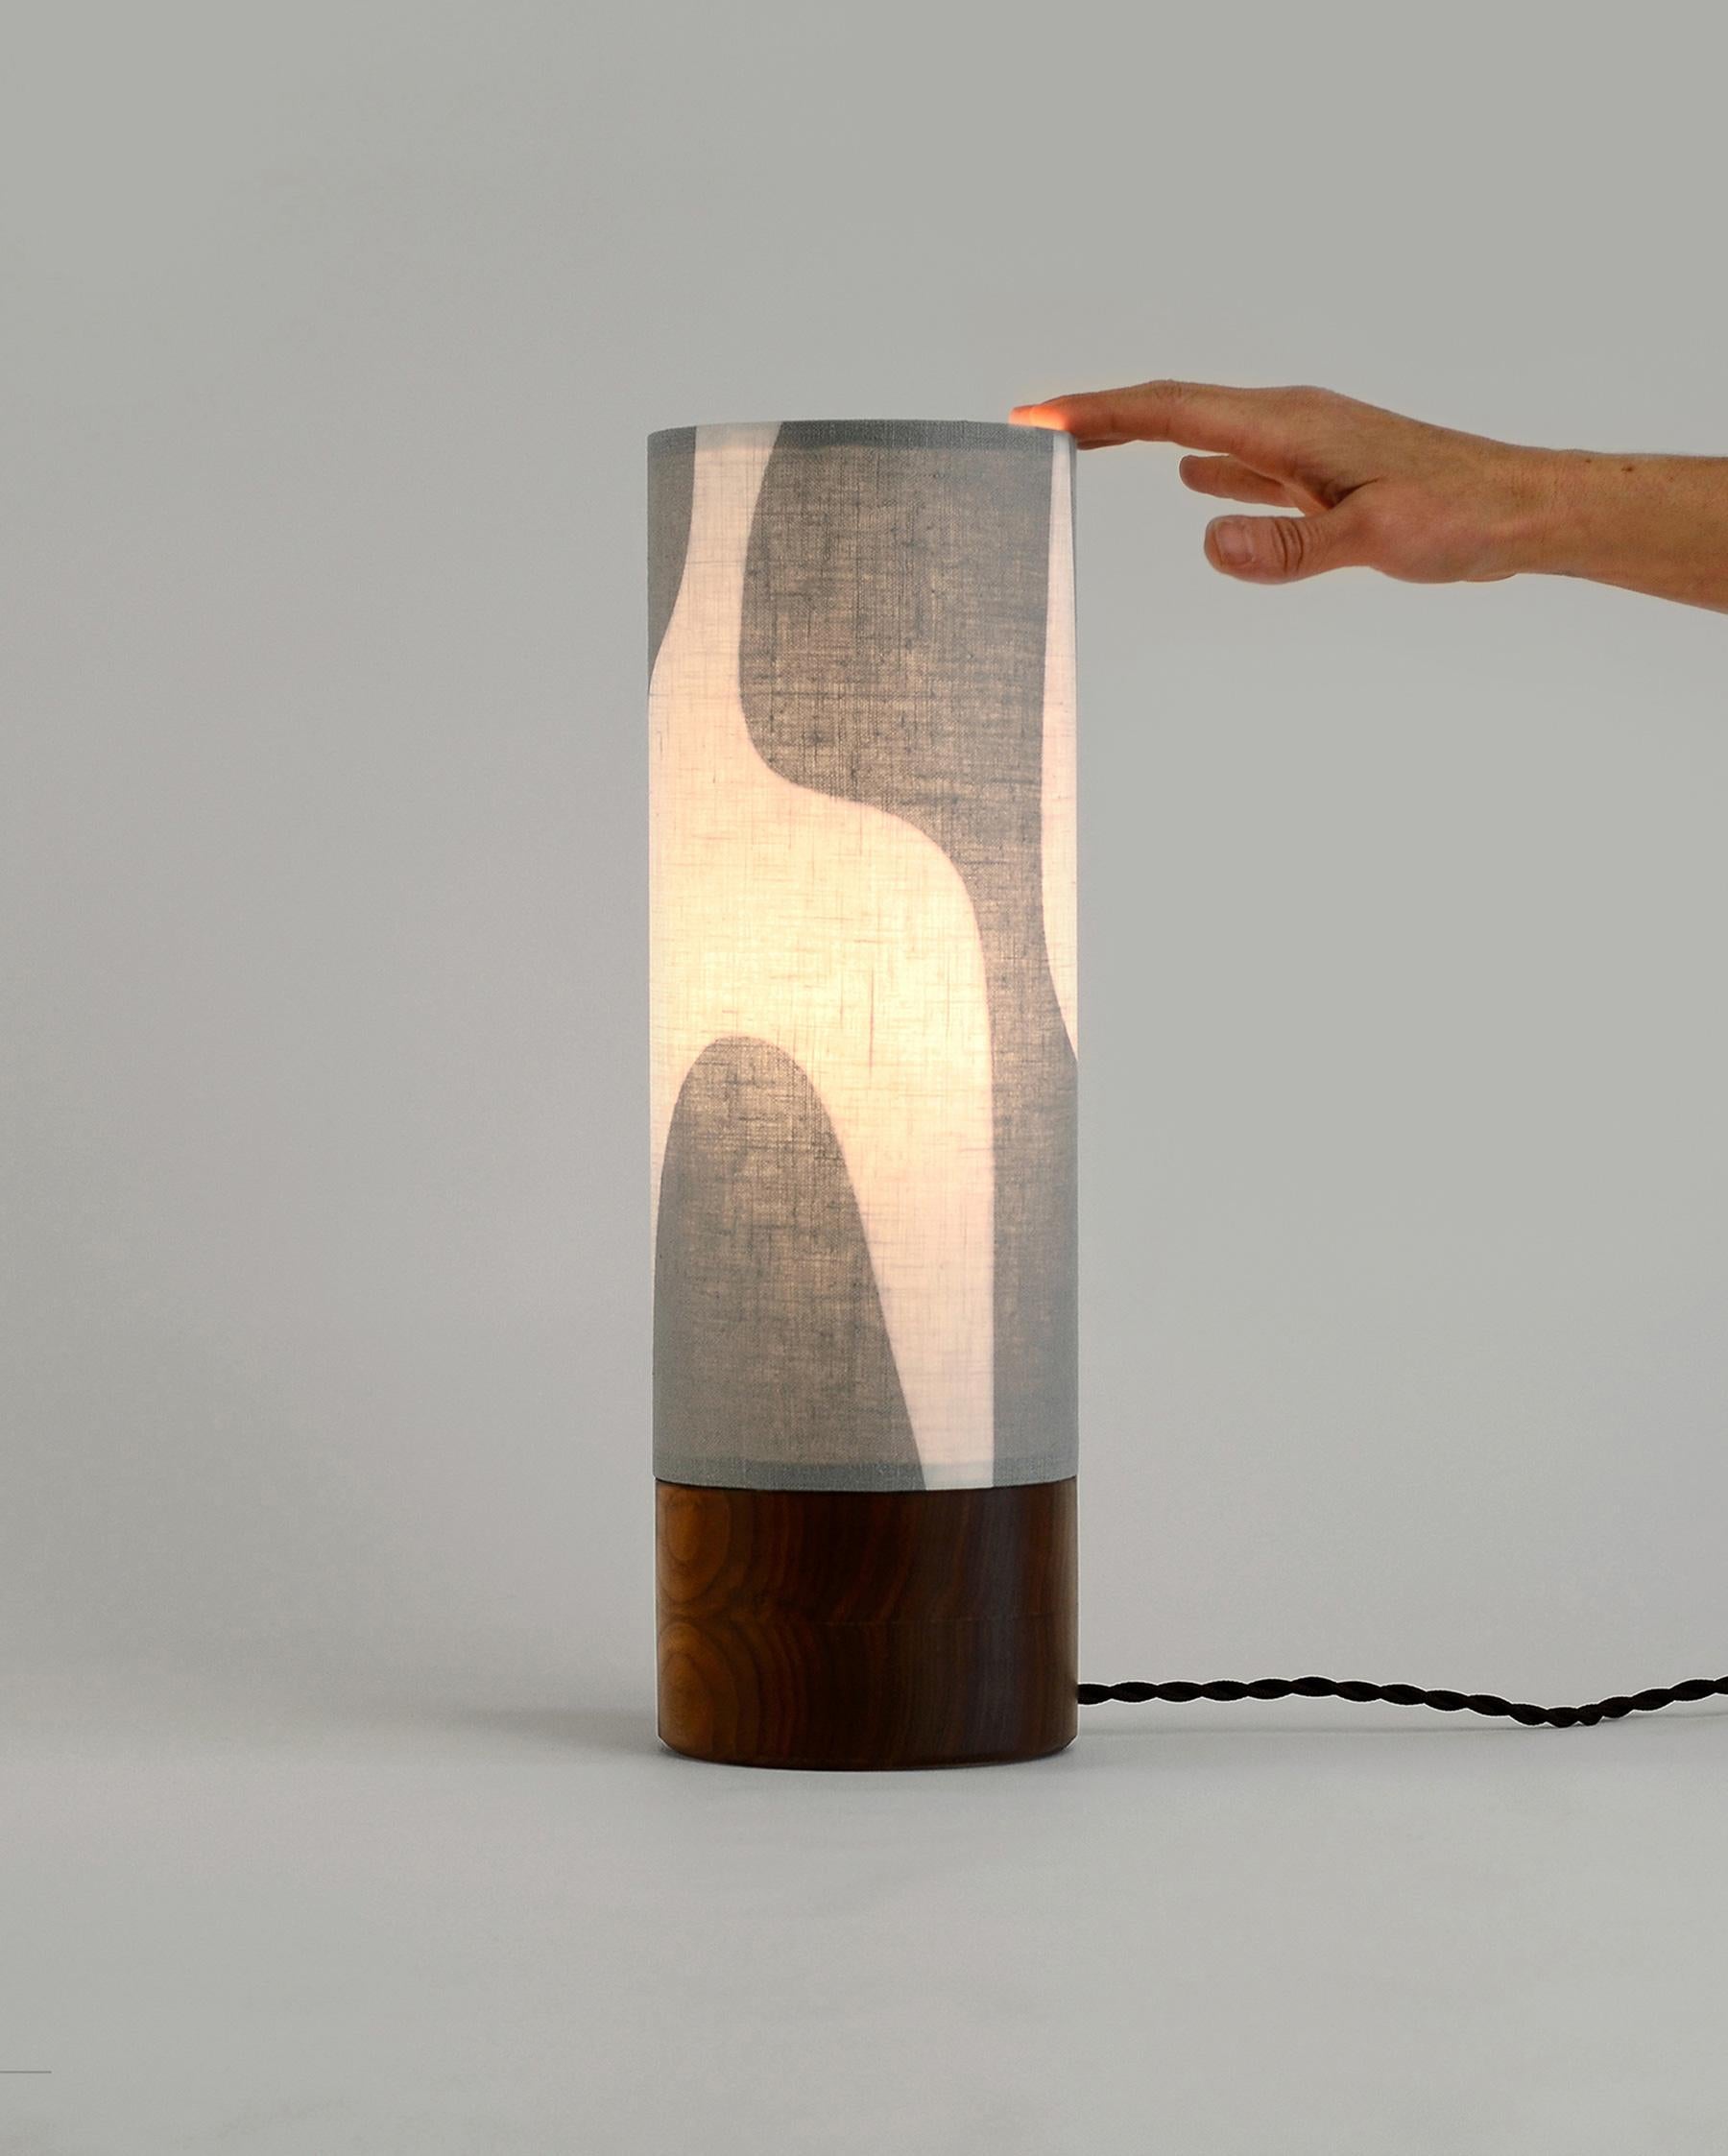 De style moderne, cette lampe de table combine des formes épurées et curvilignes pour créer une pièce unique.  Notre Collection Luma joue avec des formes simples, explorant l'espace positif et négatif pour créer un design d'abat-jour unique et